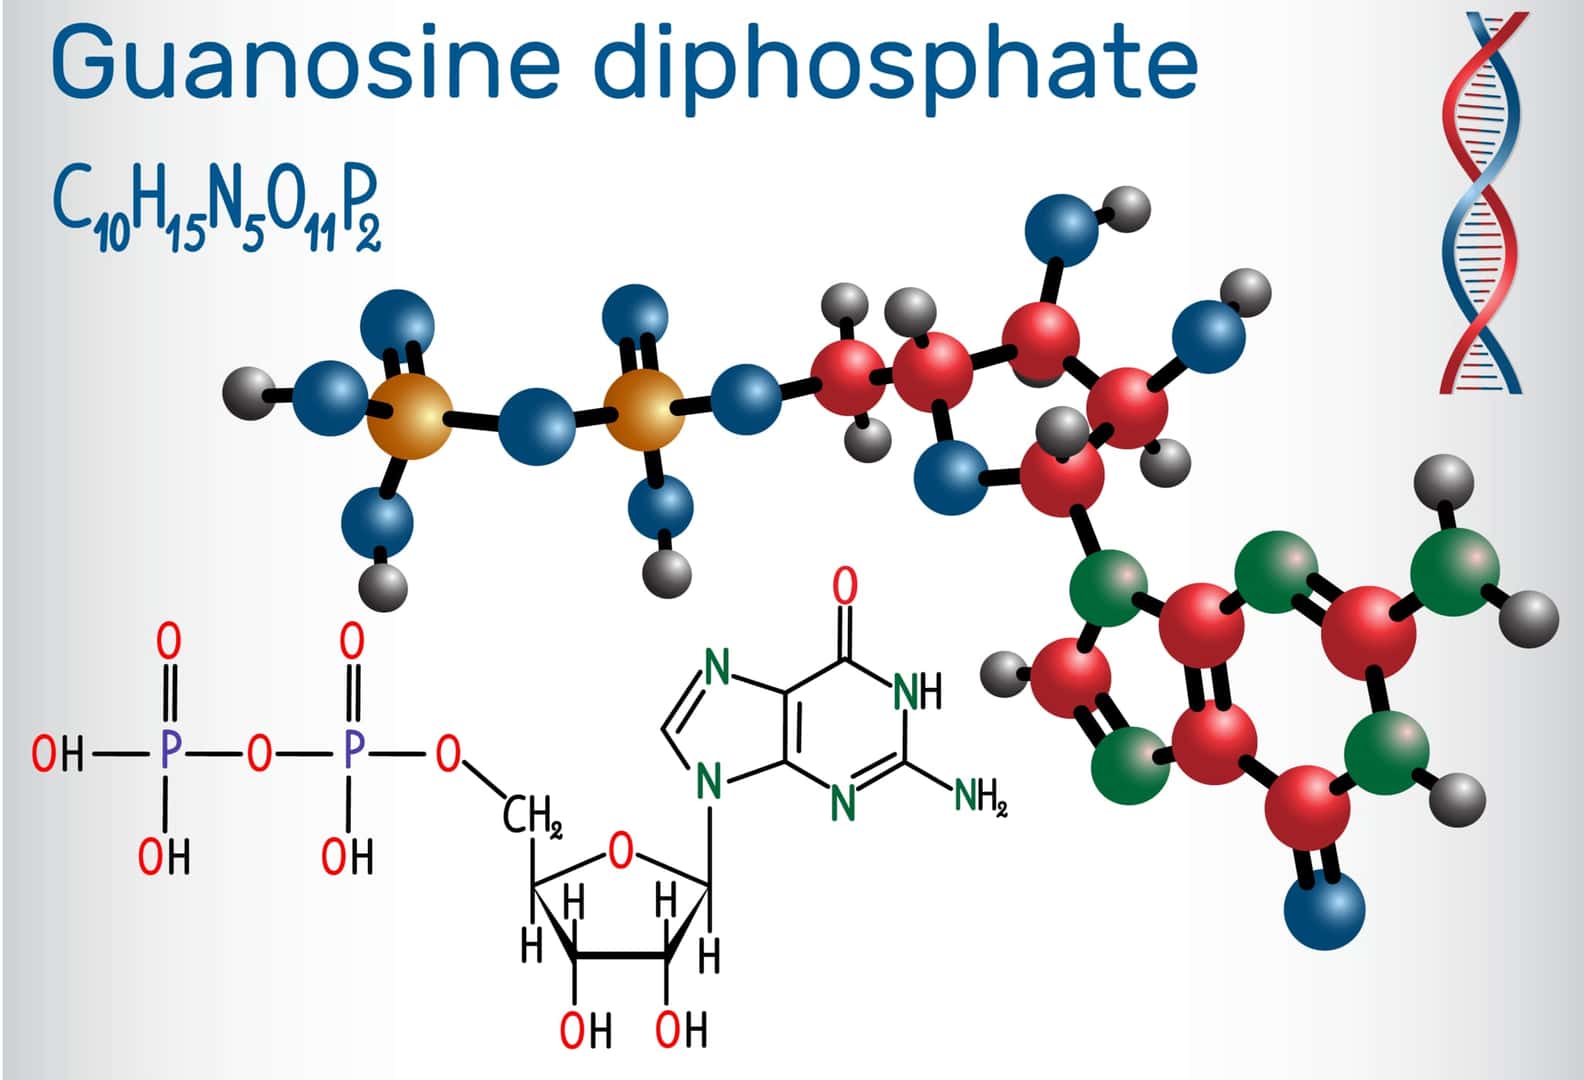 グアノシン二リン酸（GDP）の分子。構造化学式と分子のモデル。